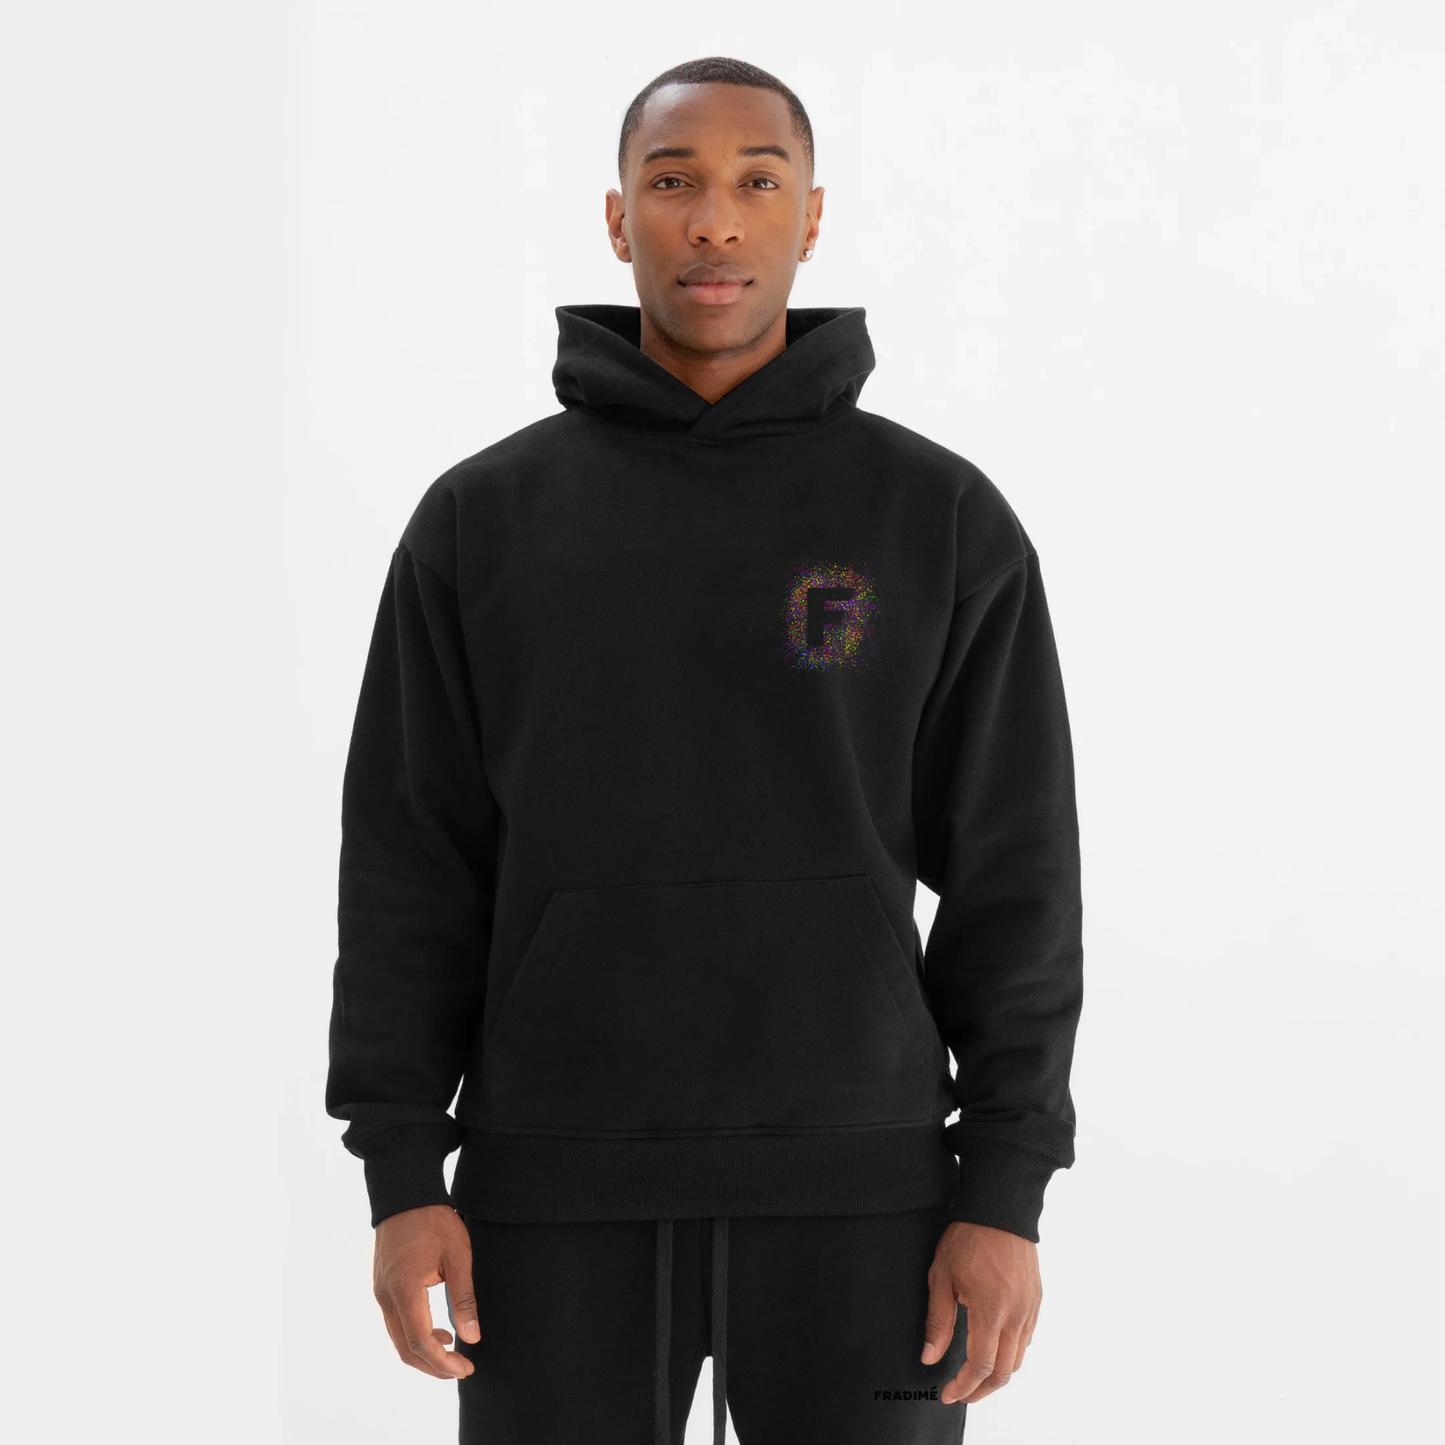 Splatter hoodie black